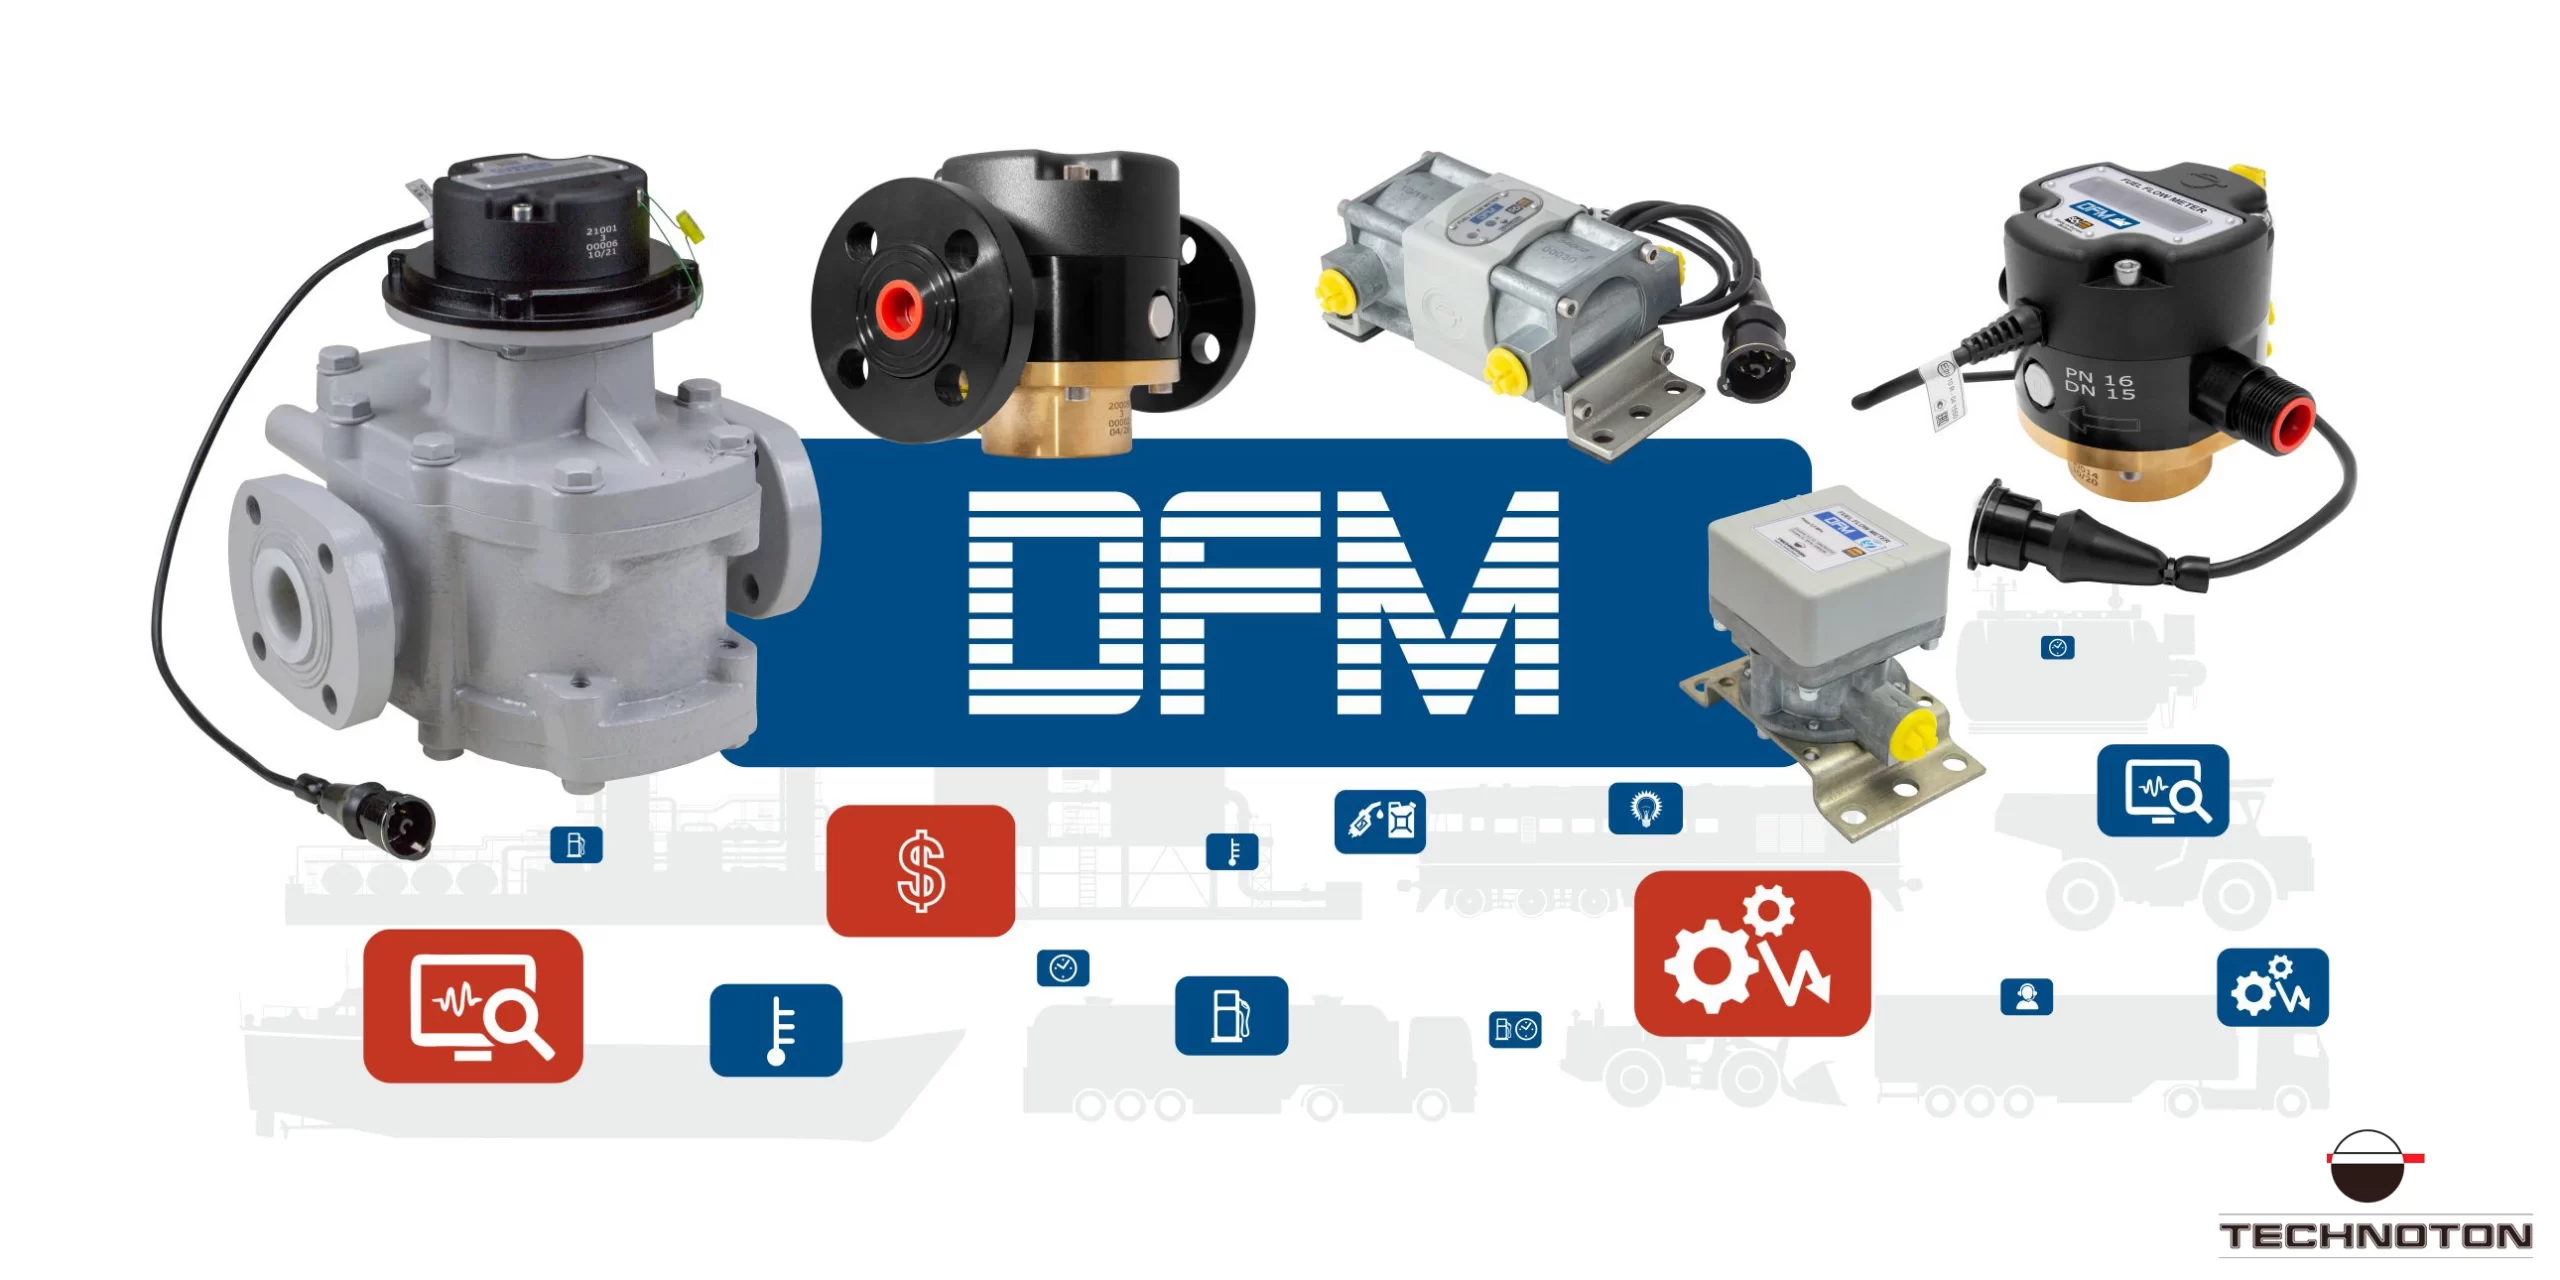 DFM fuel flow meters